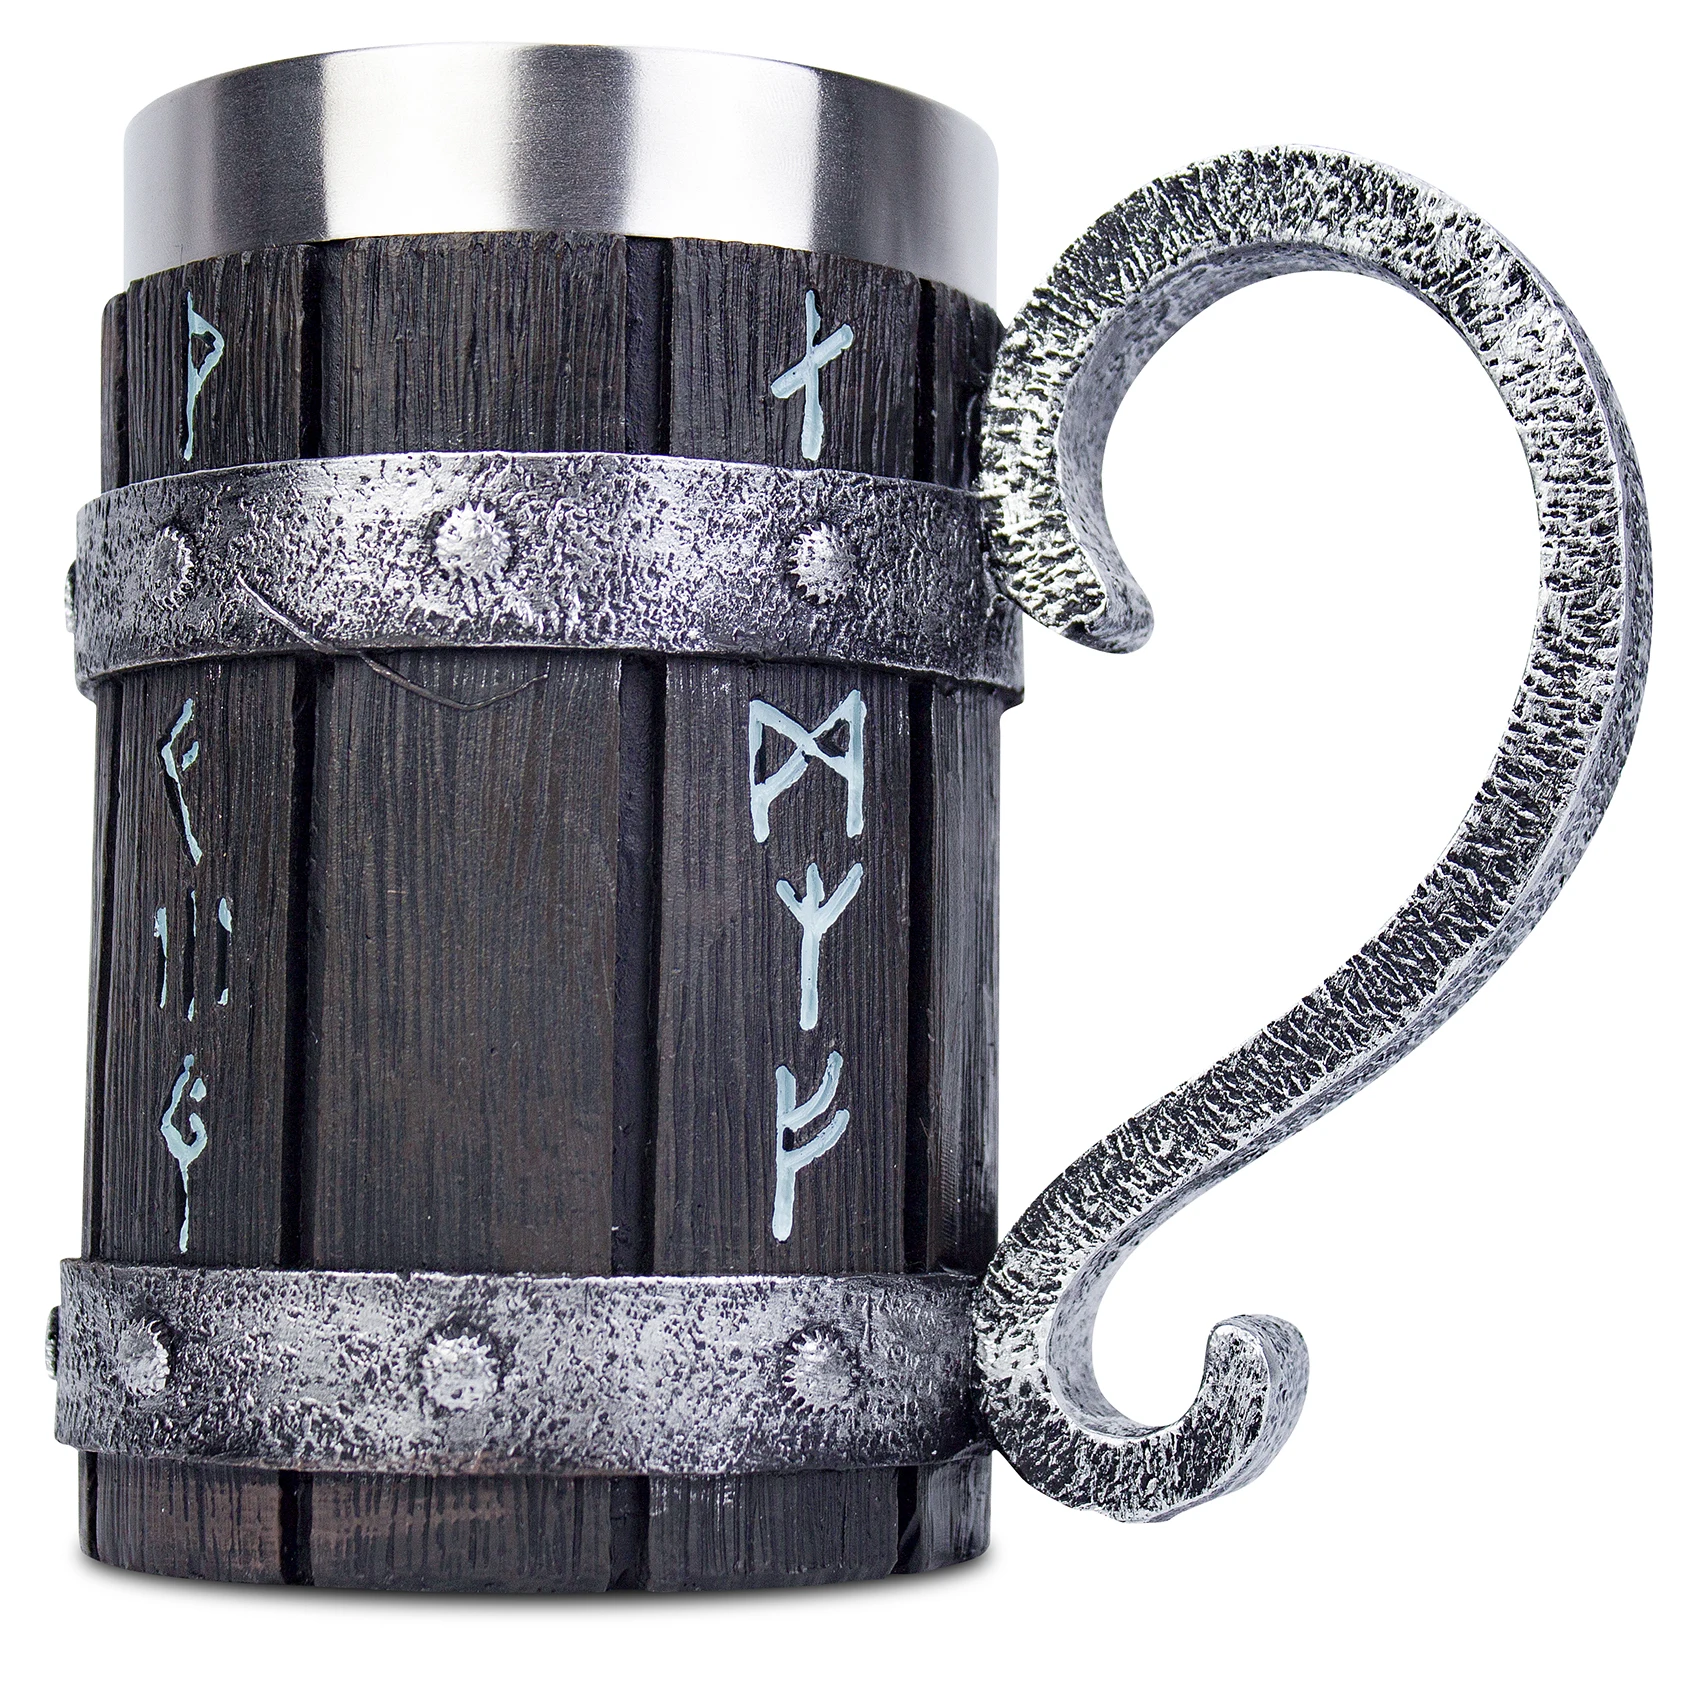 Кружка для пива с рогами викингов 600 мл нержавеющая сталь |